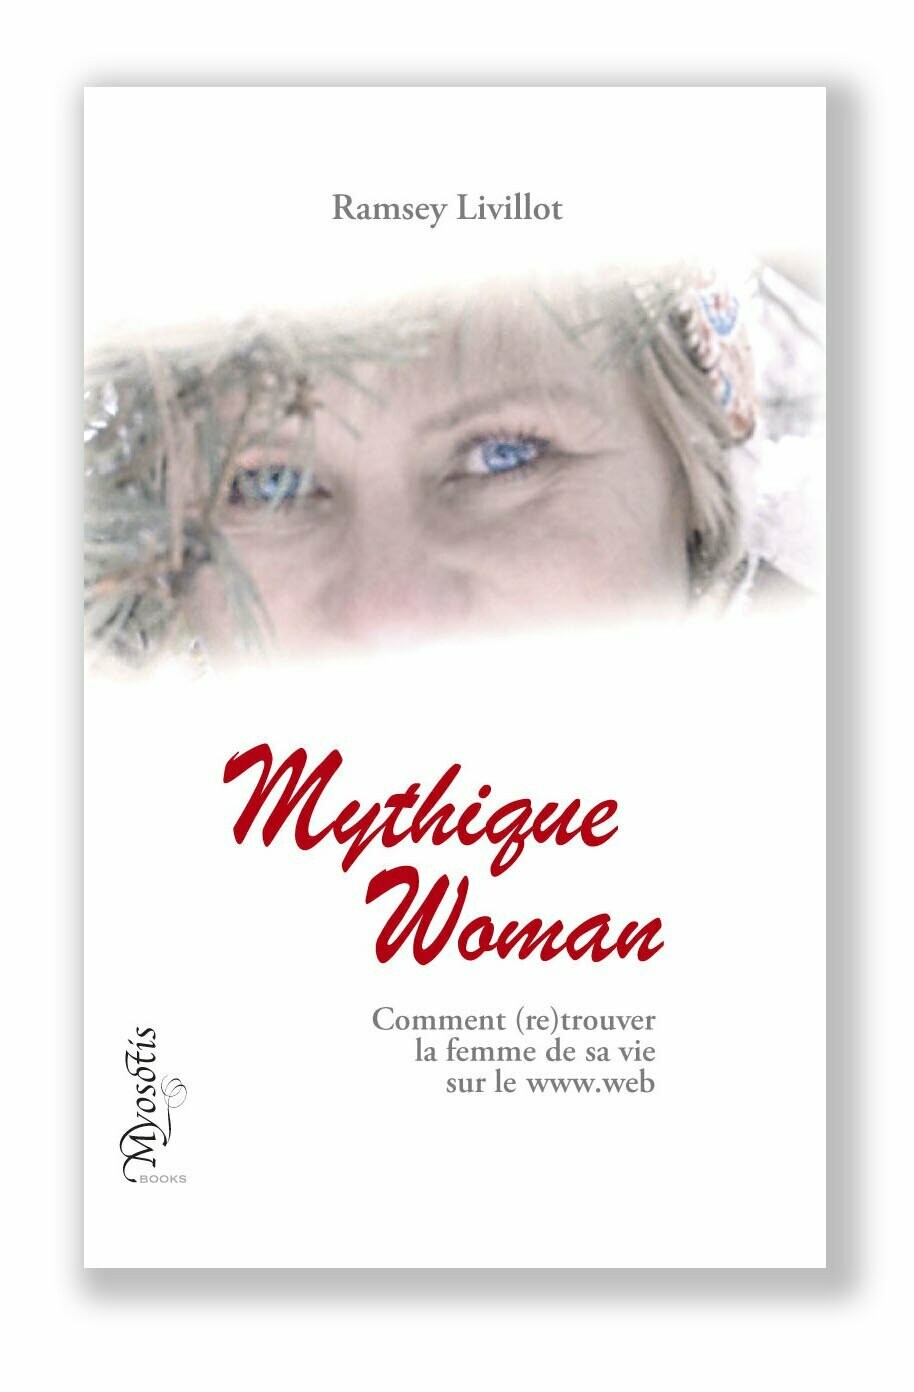 MYTHIQUE WOMAN
Comment (re)trouver la femme de sa vie sur le www.web - - - version ebook